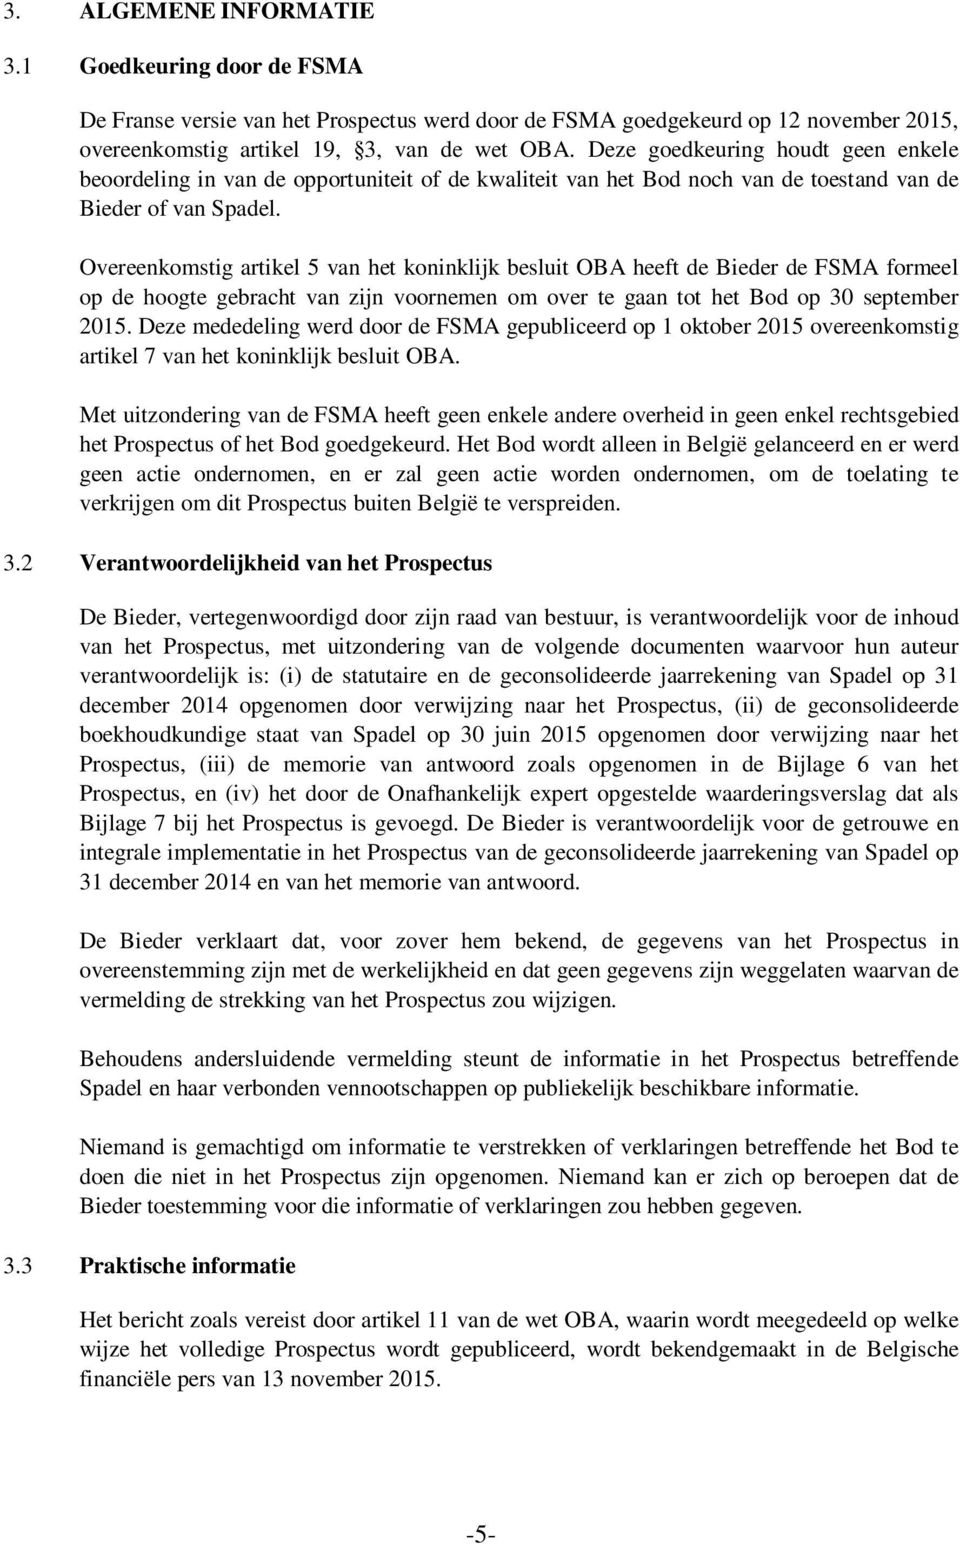 Overeenkomstig artikel 5 van het koninklijk besluit OBA heeft de Bieder de FSMA formeel op de hoogte gebracht van zijn voornemen om over te gaan tot het Bod op 30 september 2015.